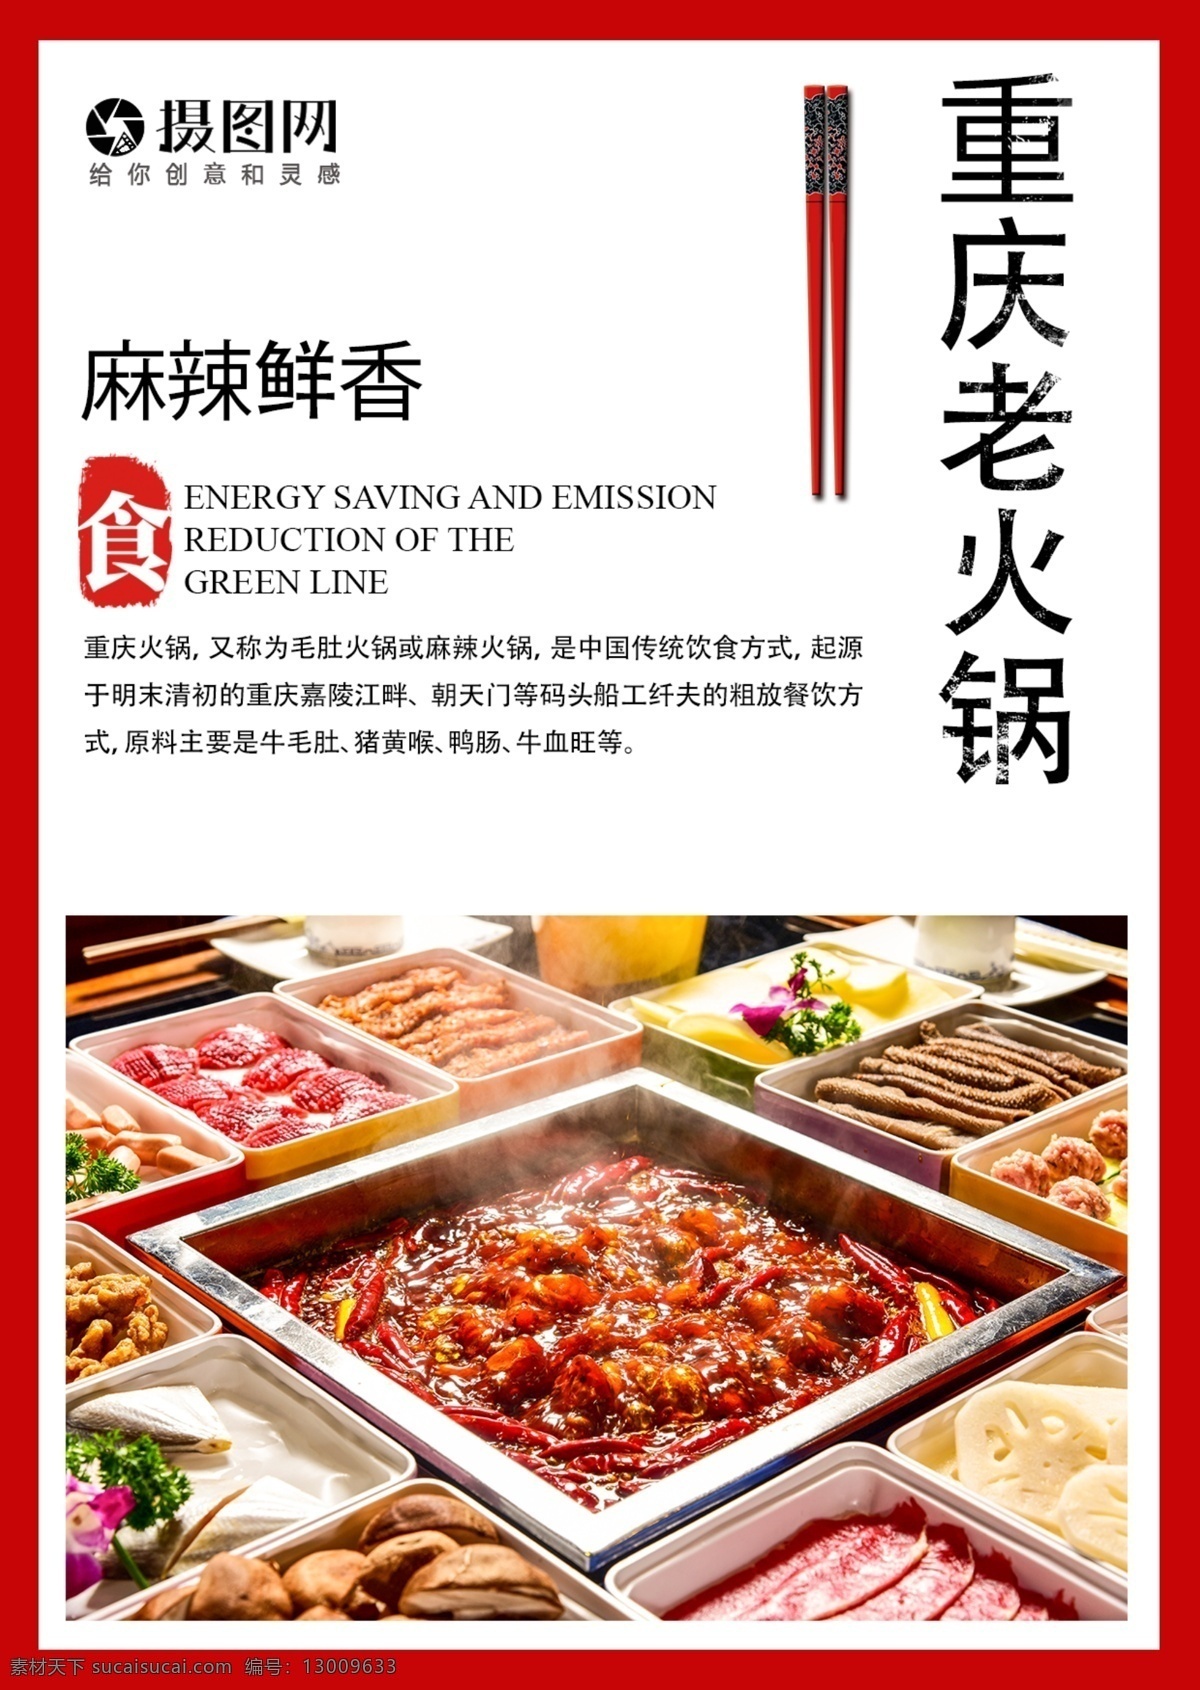 四川火锅 餐饮 宣传单 火锅 菜单 美食 食物